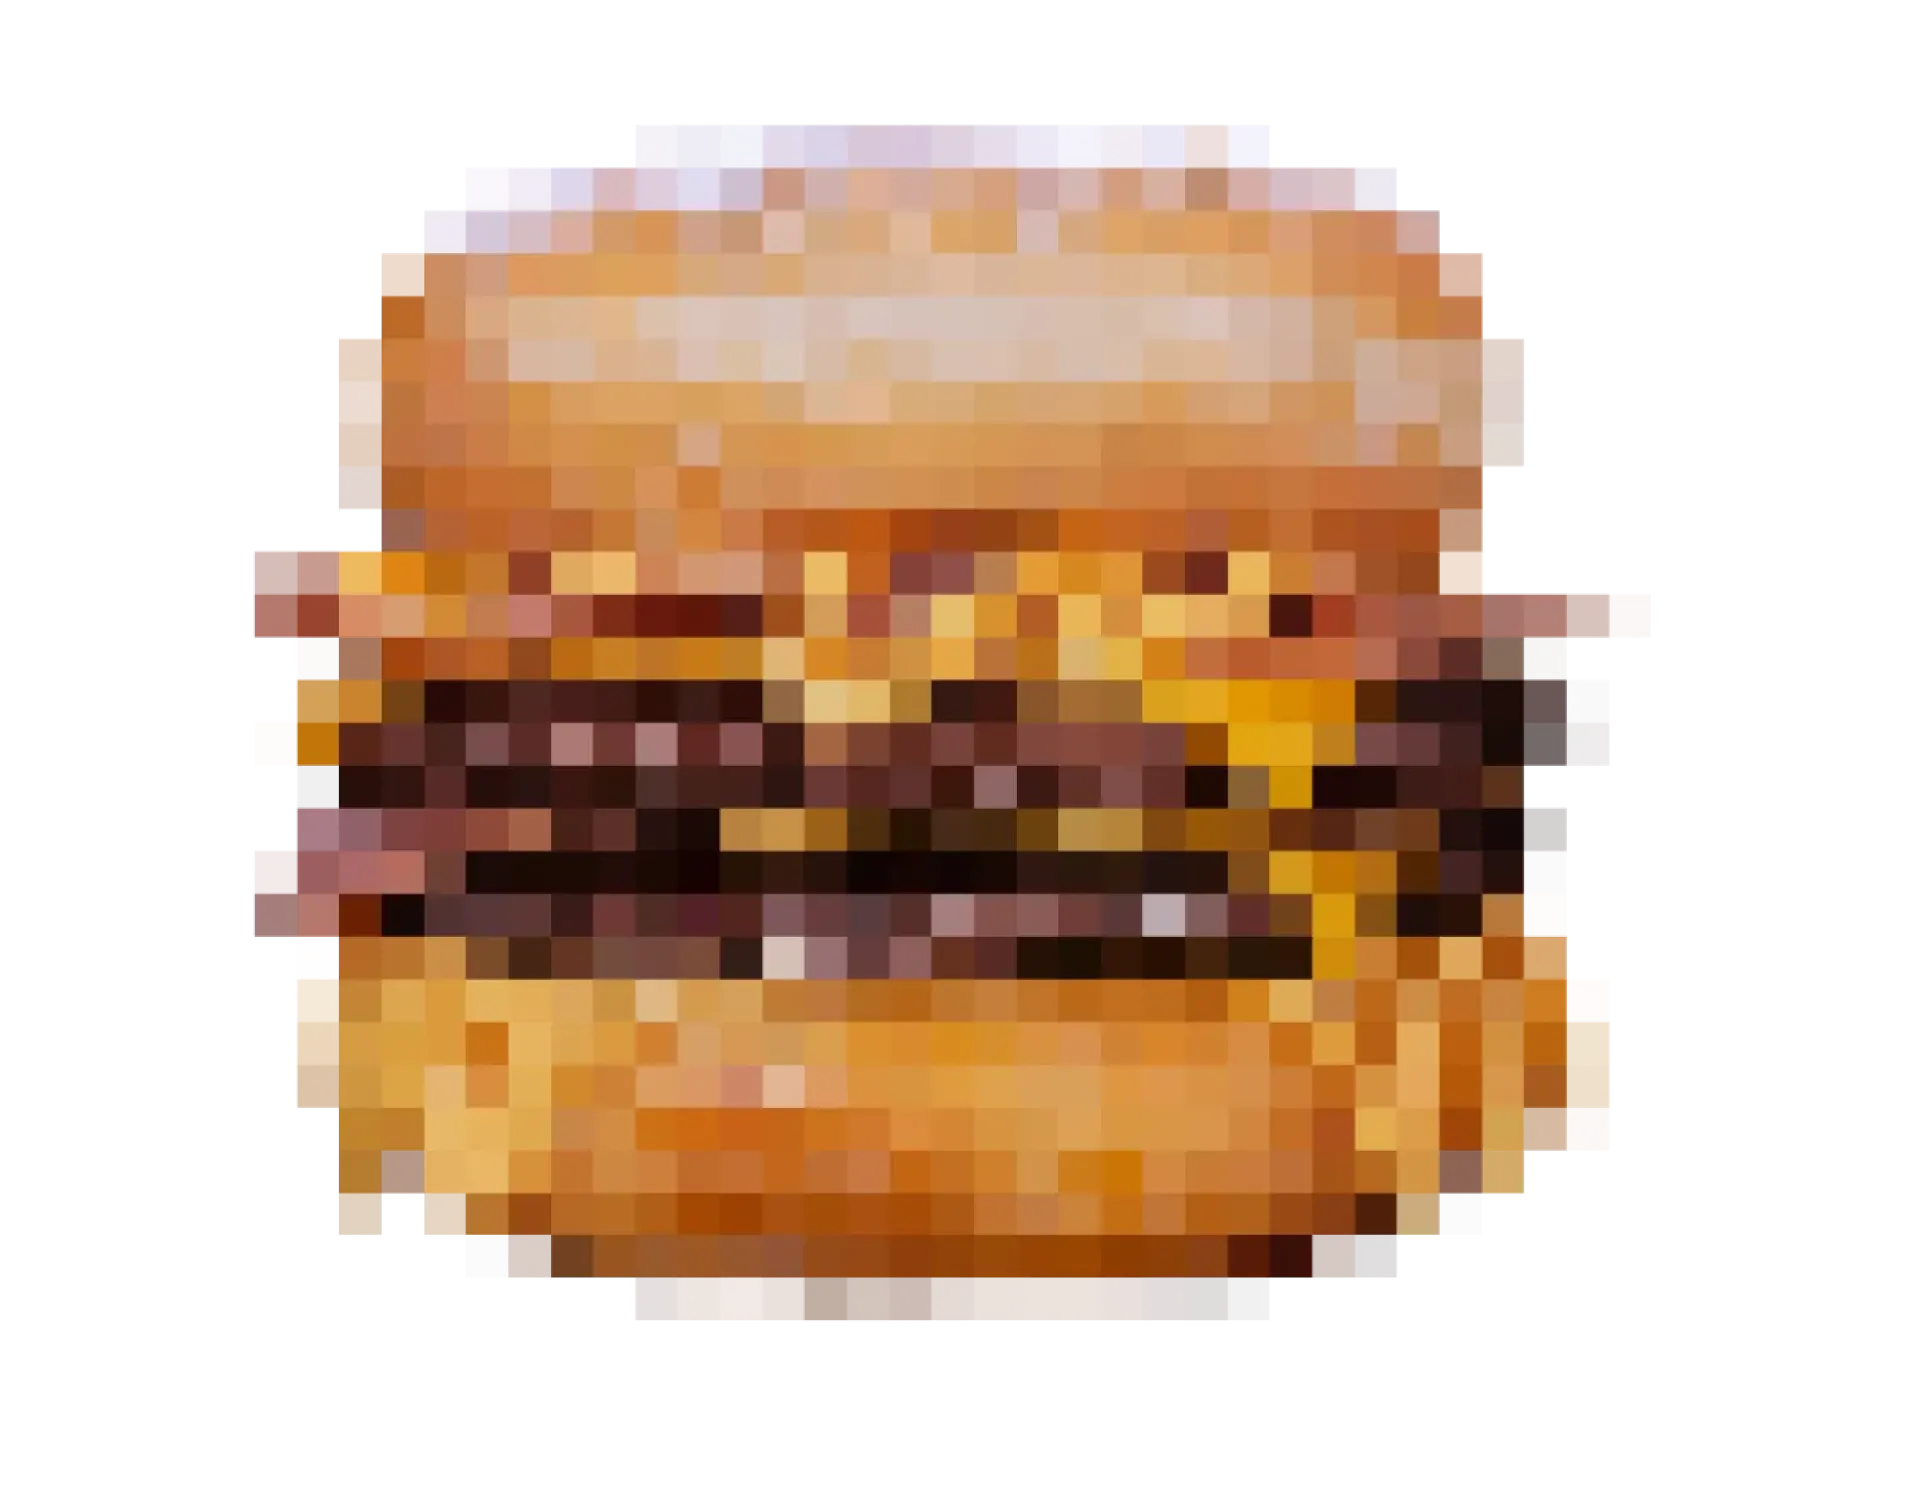 Hamburgesa de donut la tremenda pixelada